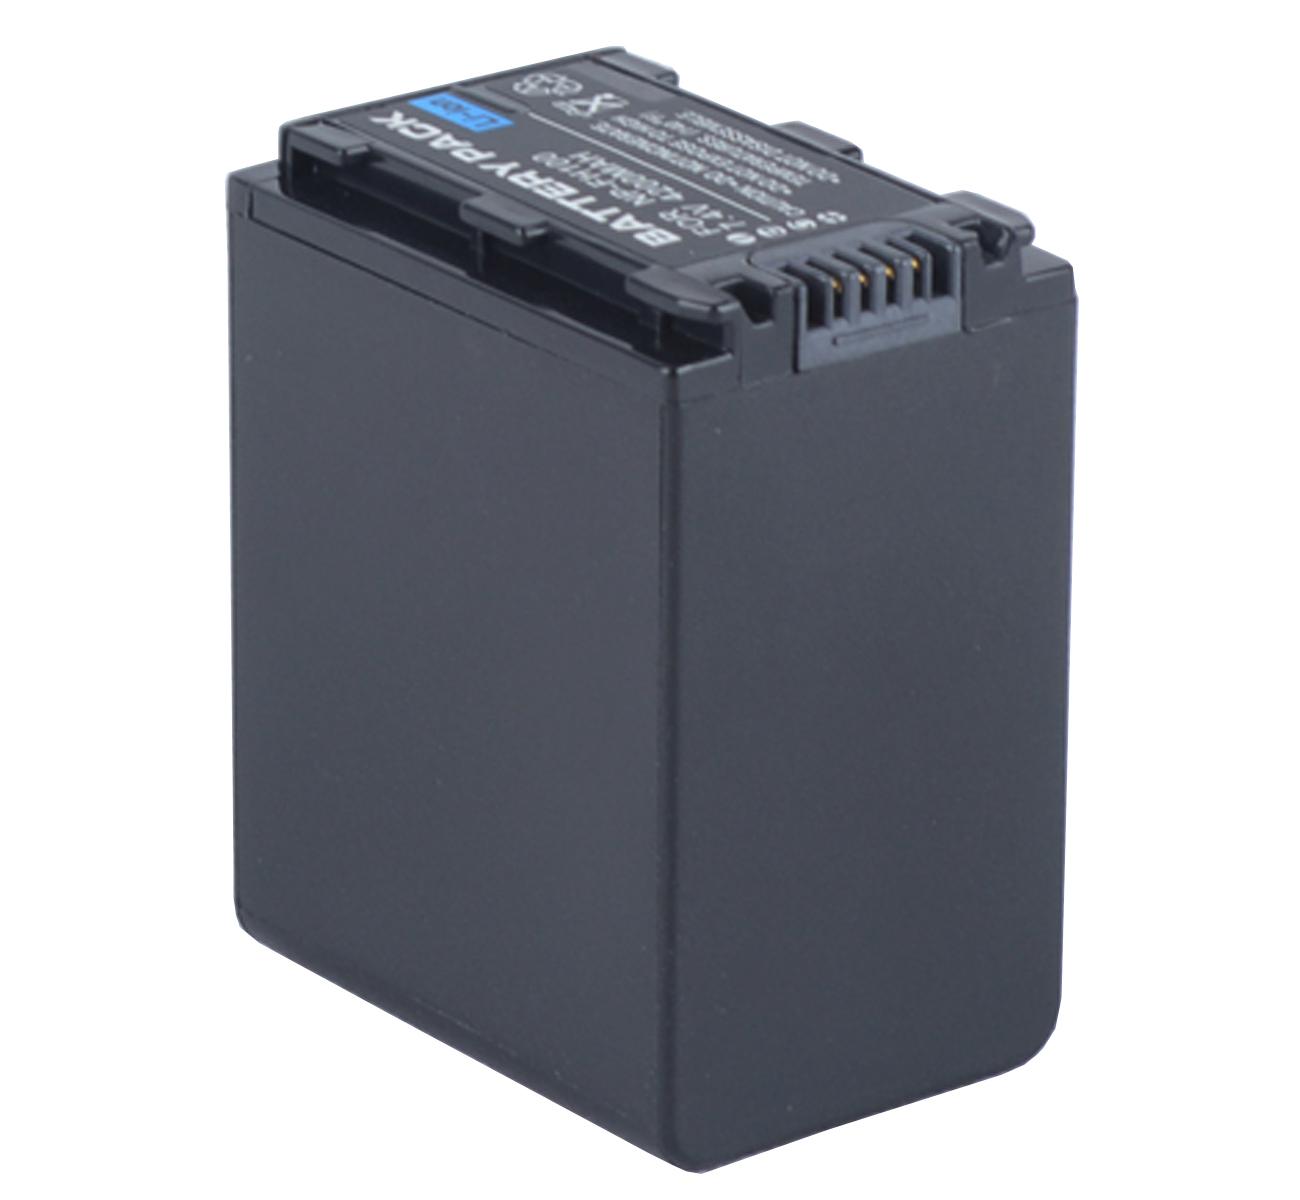 Изображение товара: Батарейный блок для видеокамеры sony HDR-SR5, HDR-SR7, HDR-SR8, HDR-SR10, HDR-SR11, HDR-SR12 Handycam